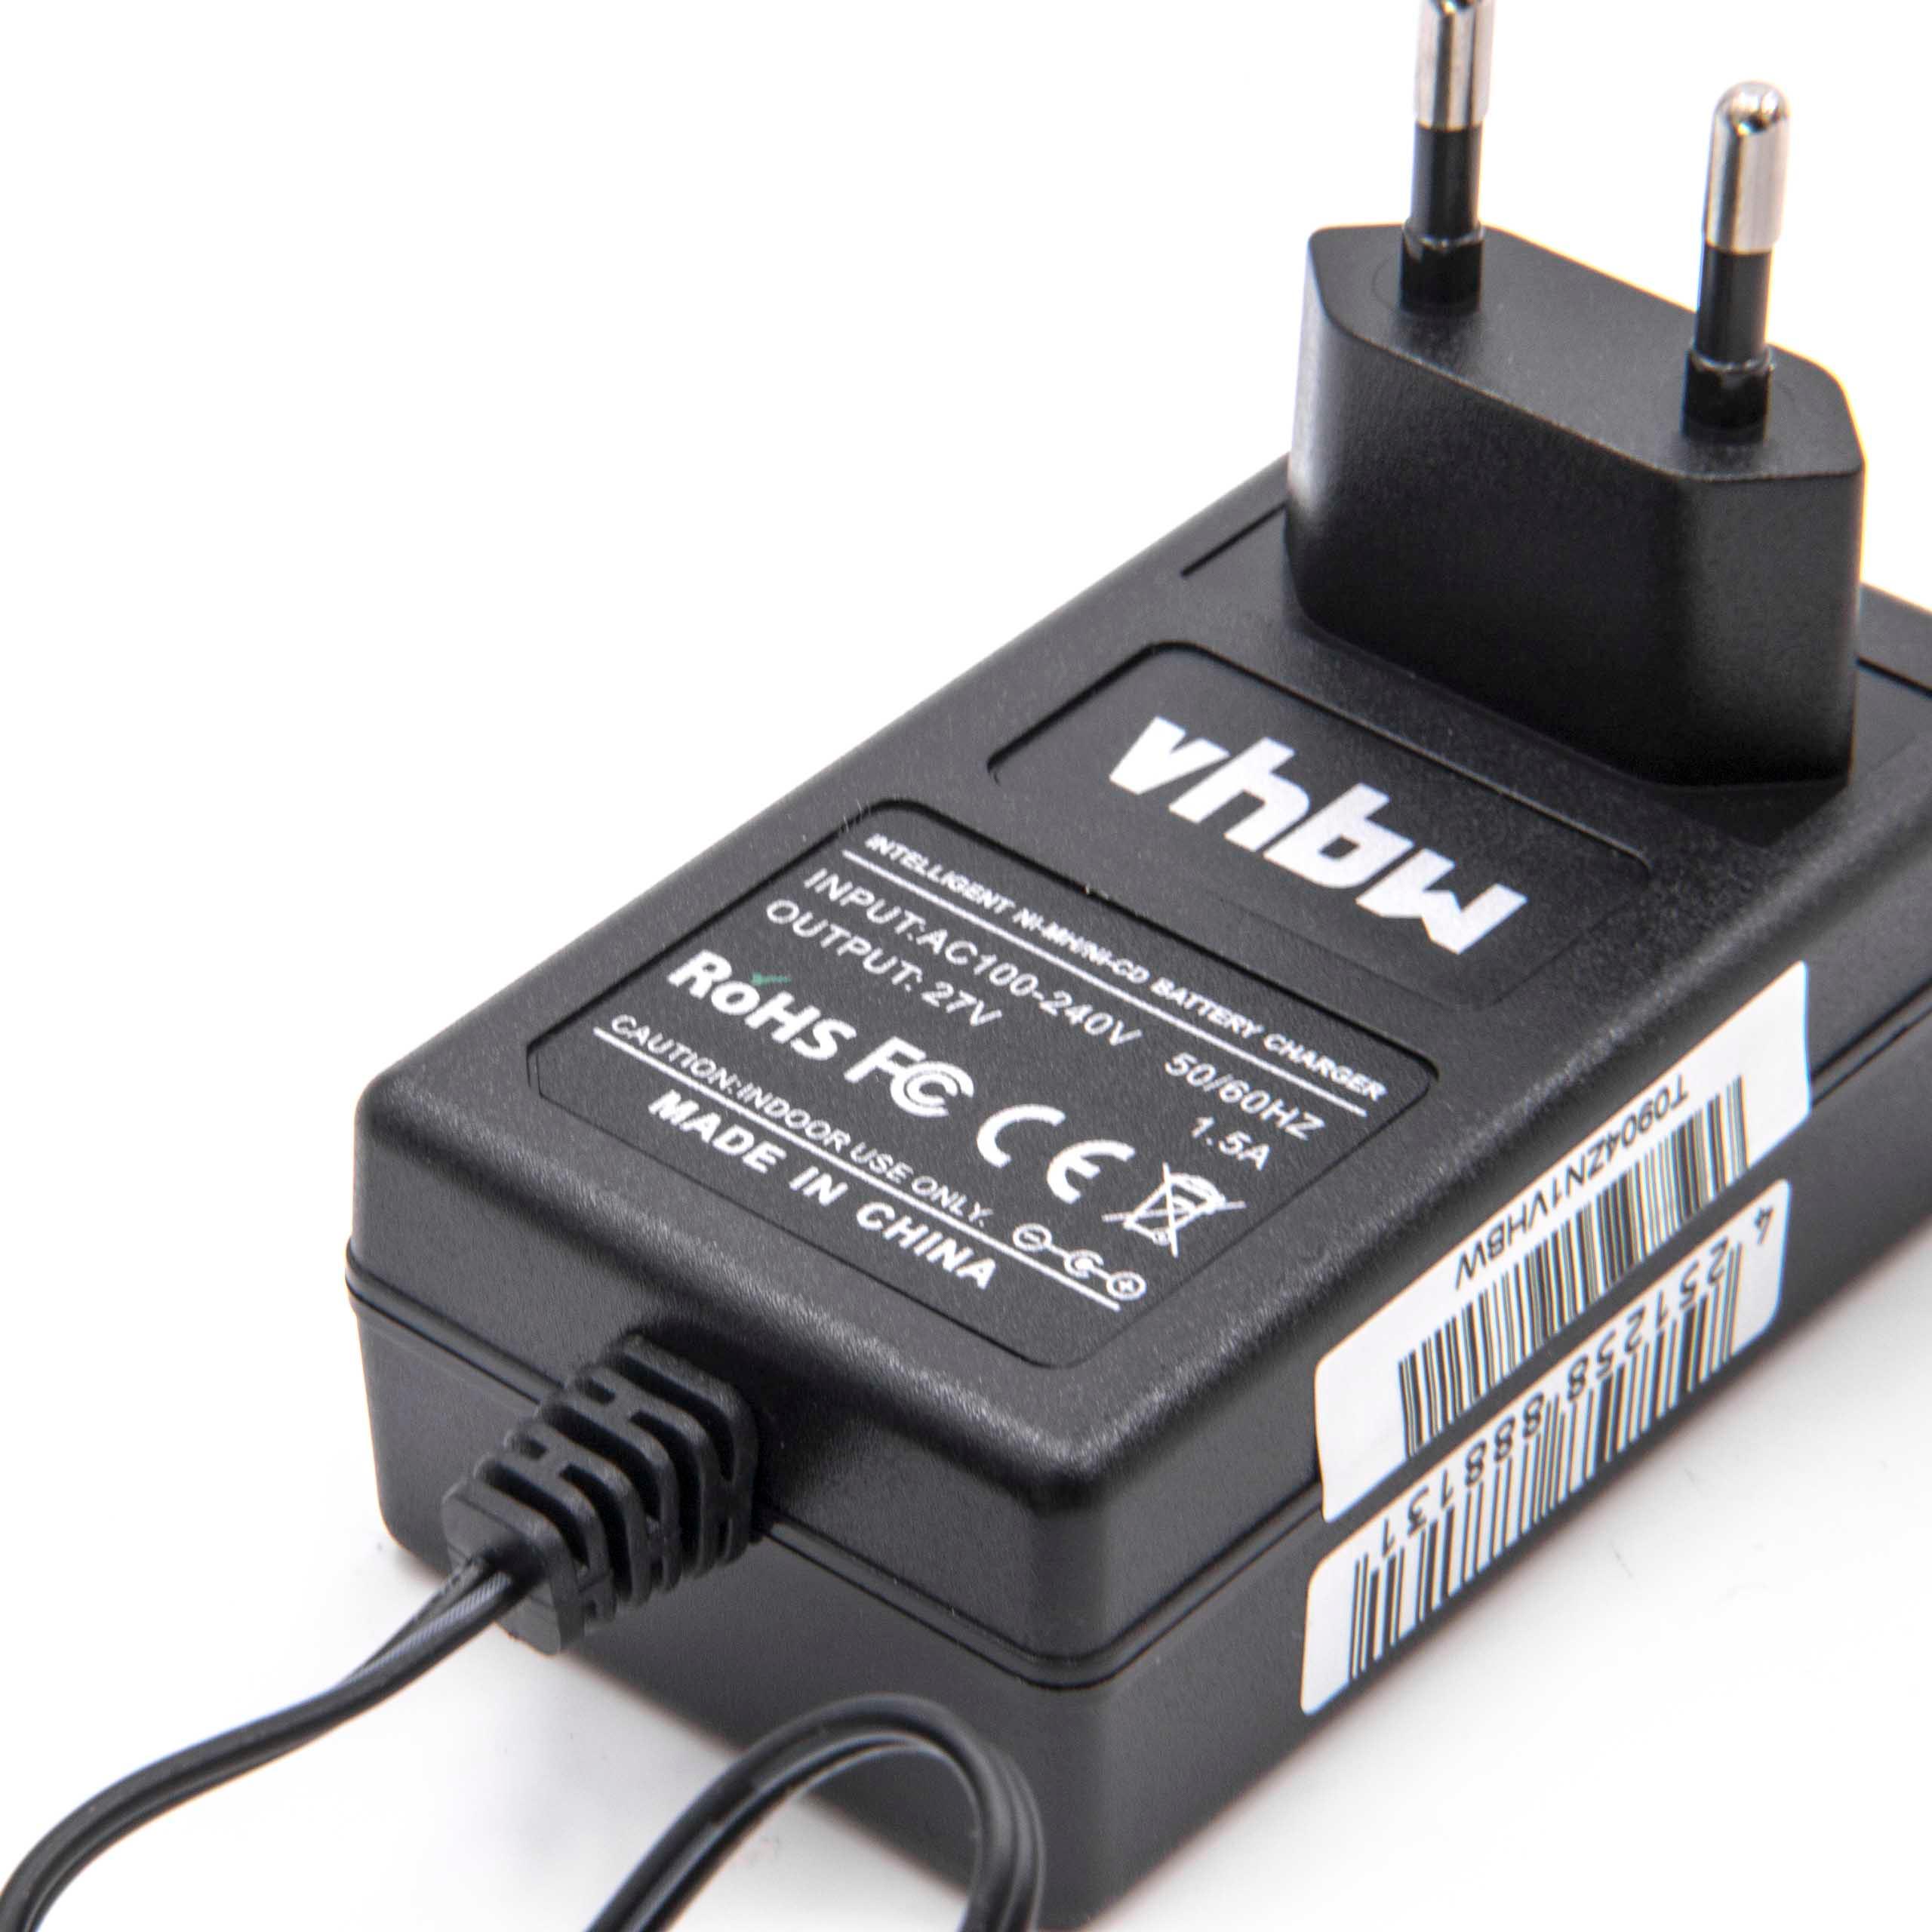 Chargeur pour batterie d'outil électrique Klauke, Makita, EK 12025